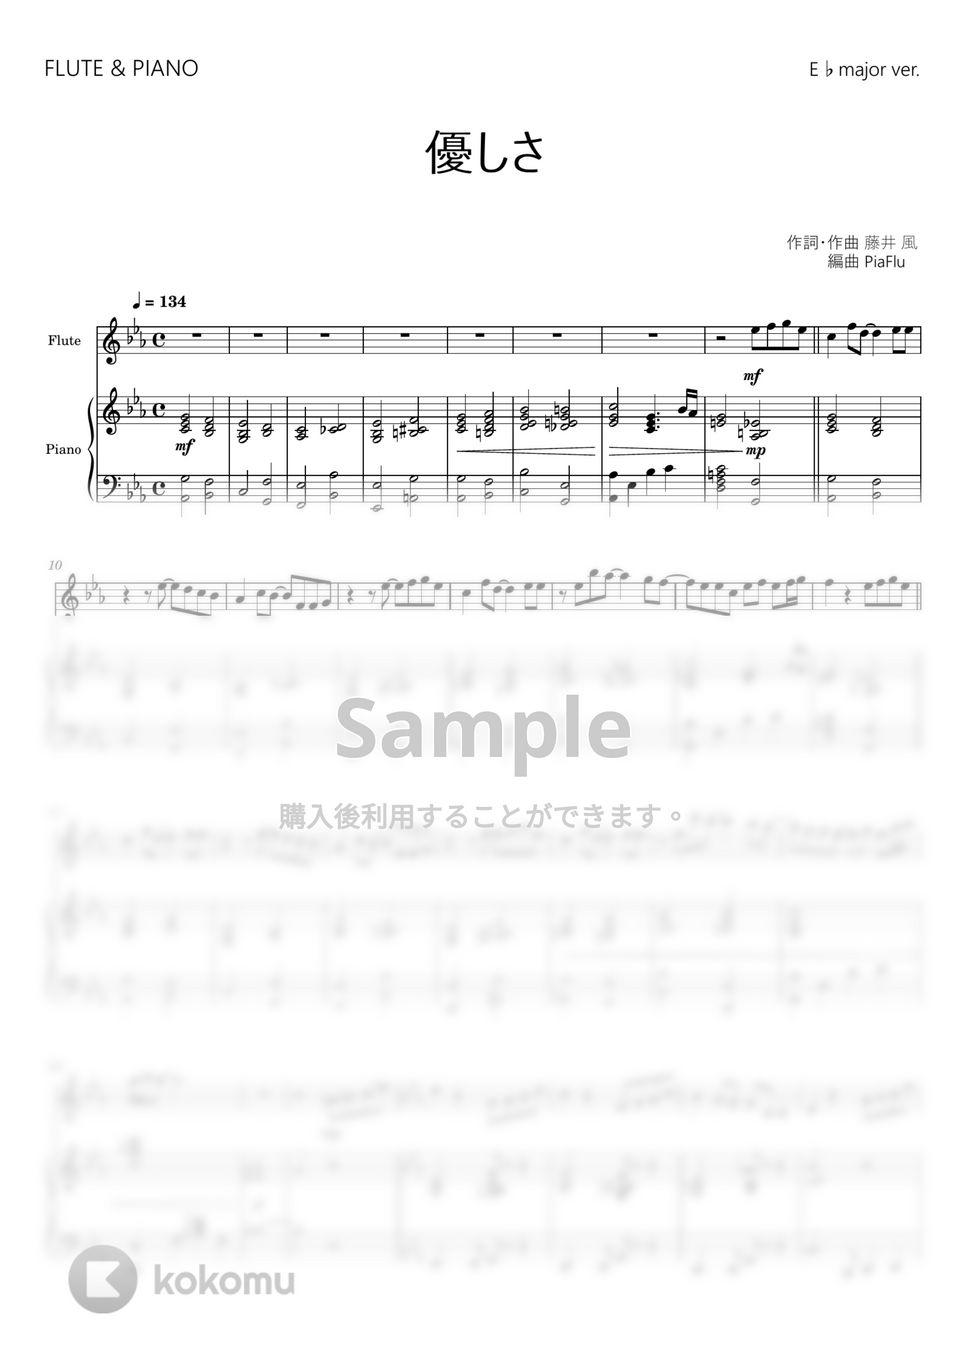 藤井 風 - 優しさ (フルート&ピアノ伴奏) by PiaFlu